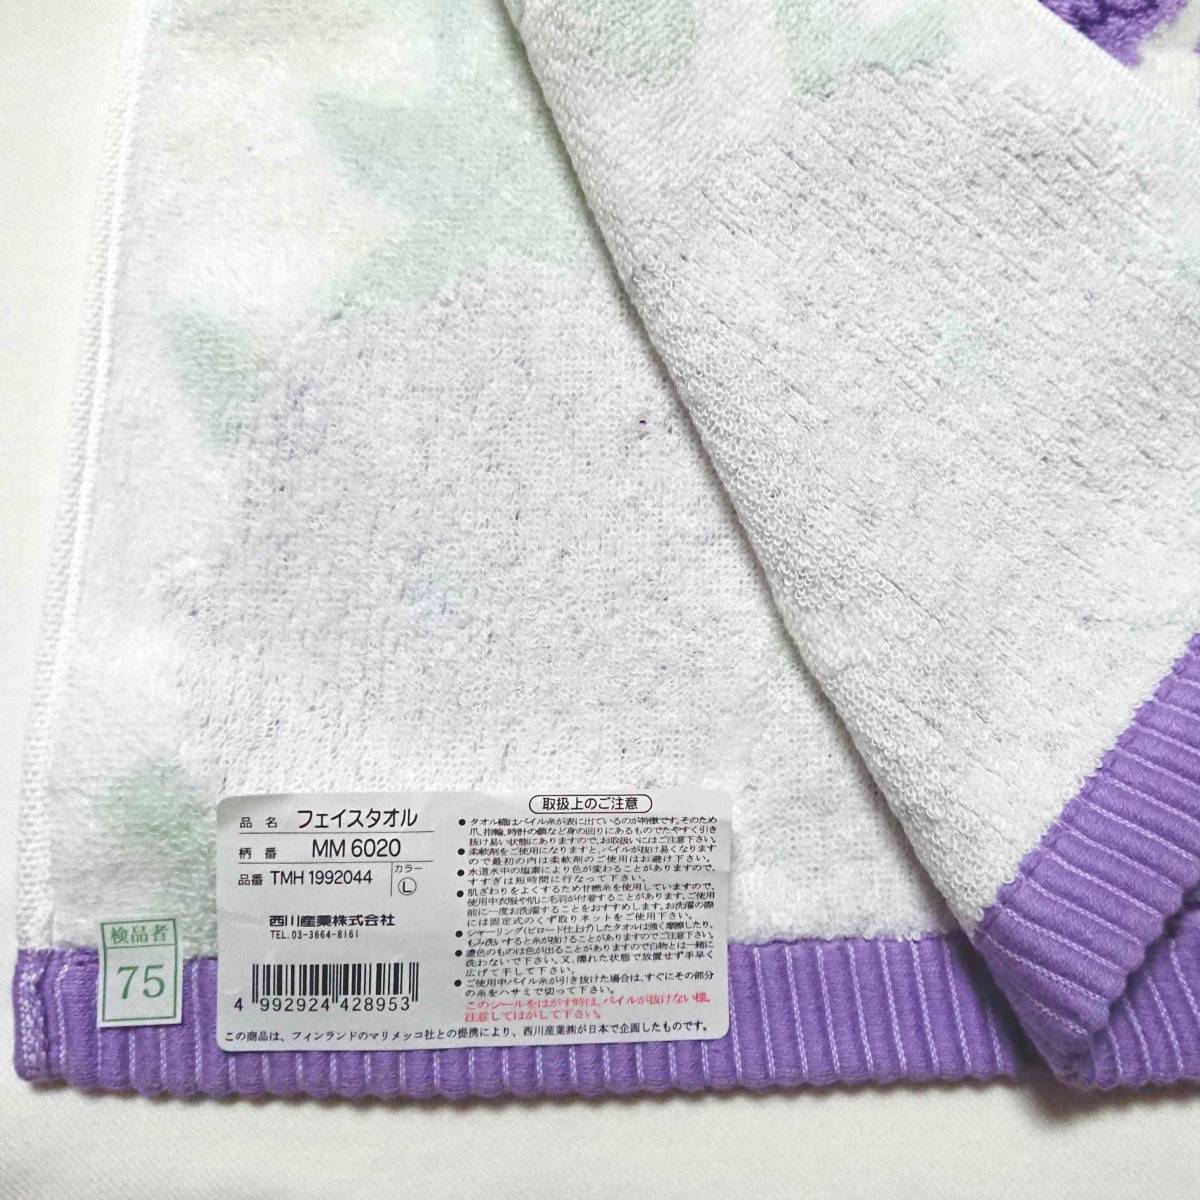  Marimekko Prima ve-la полотенце для лица лиловый marimekko PRIMAVERA сделано в Японии новый товар не использовался 